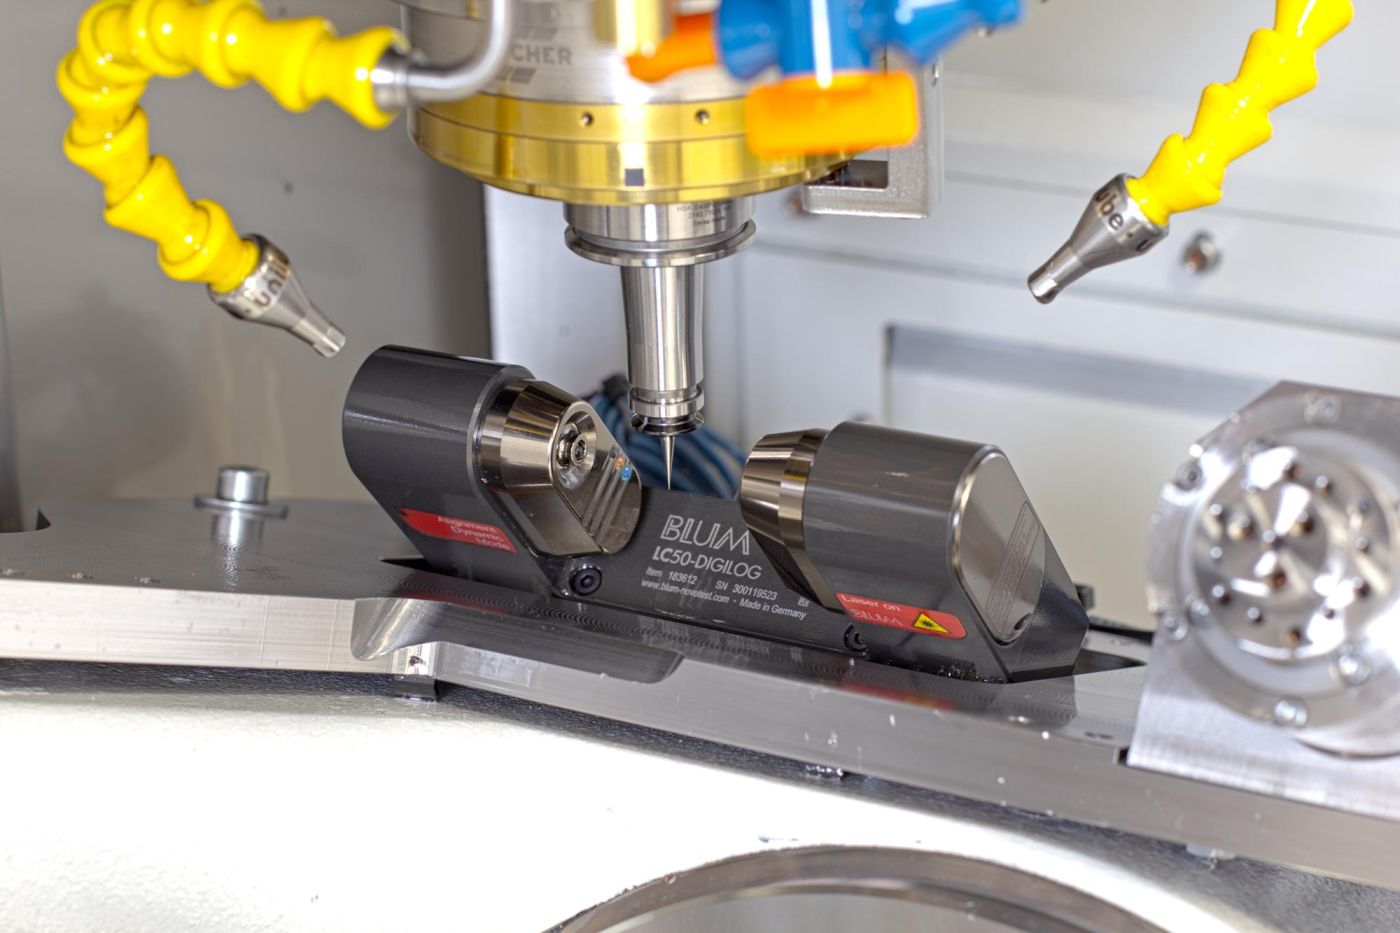 Das Lasermesssystem LC50-Digilog vermisst bei Zecha Fräswerkzeuge mit einem Durchmesser von 10 µm hochpräzise.